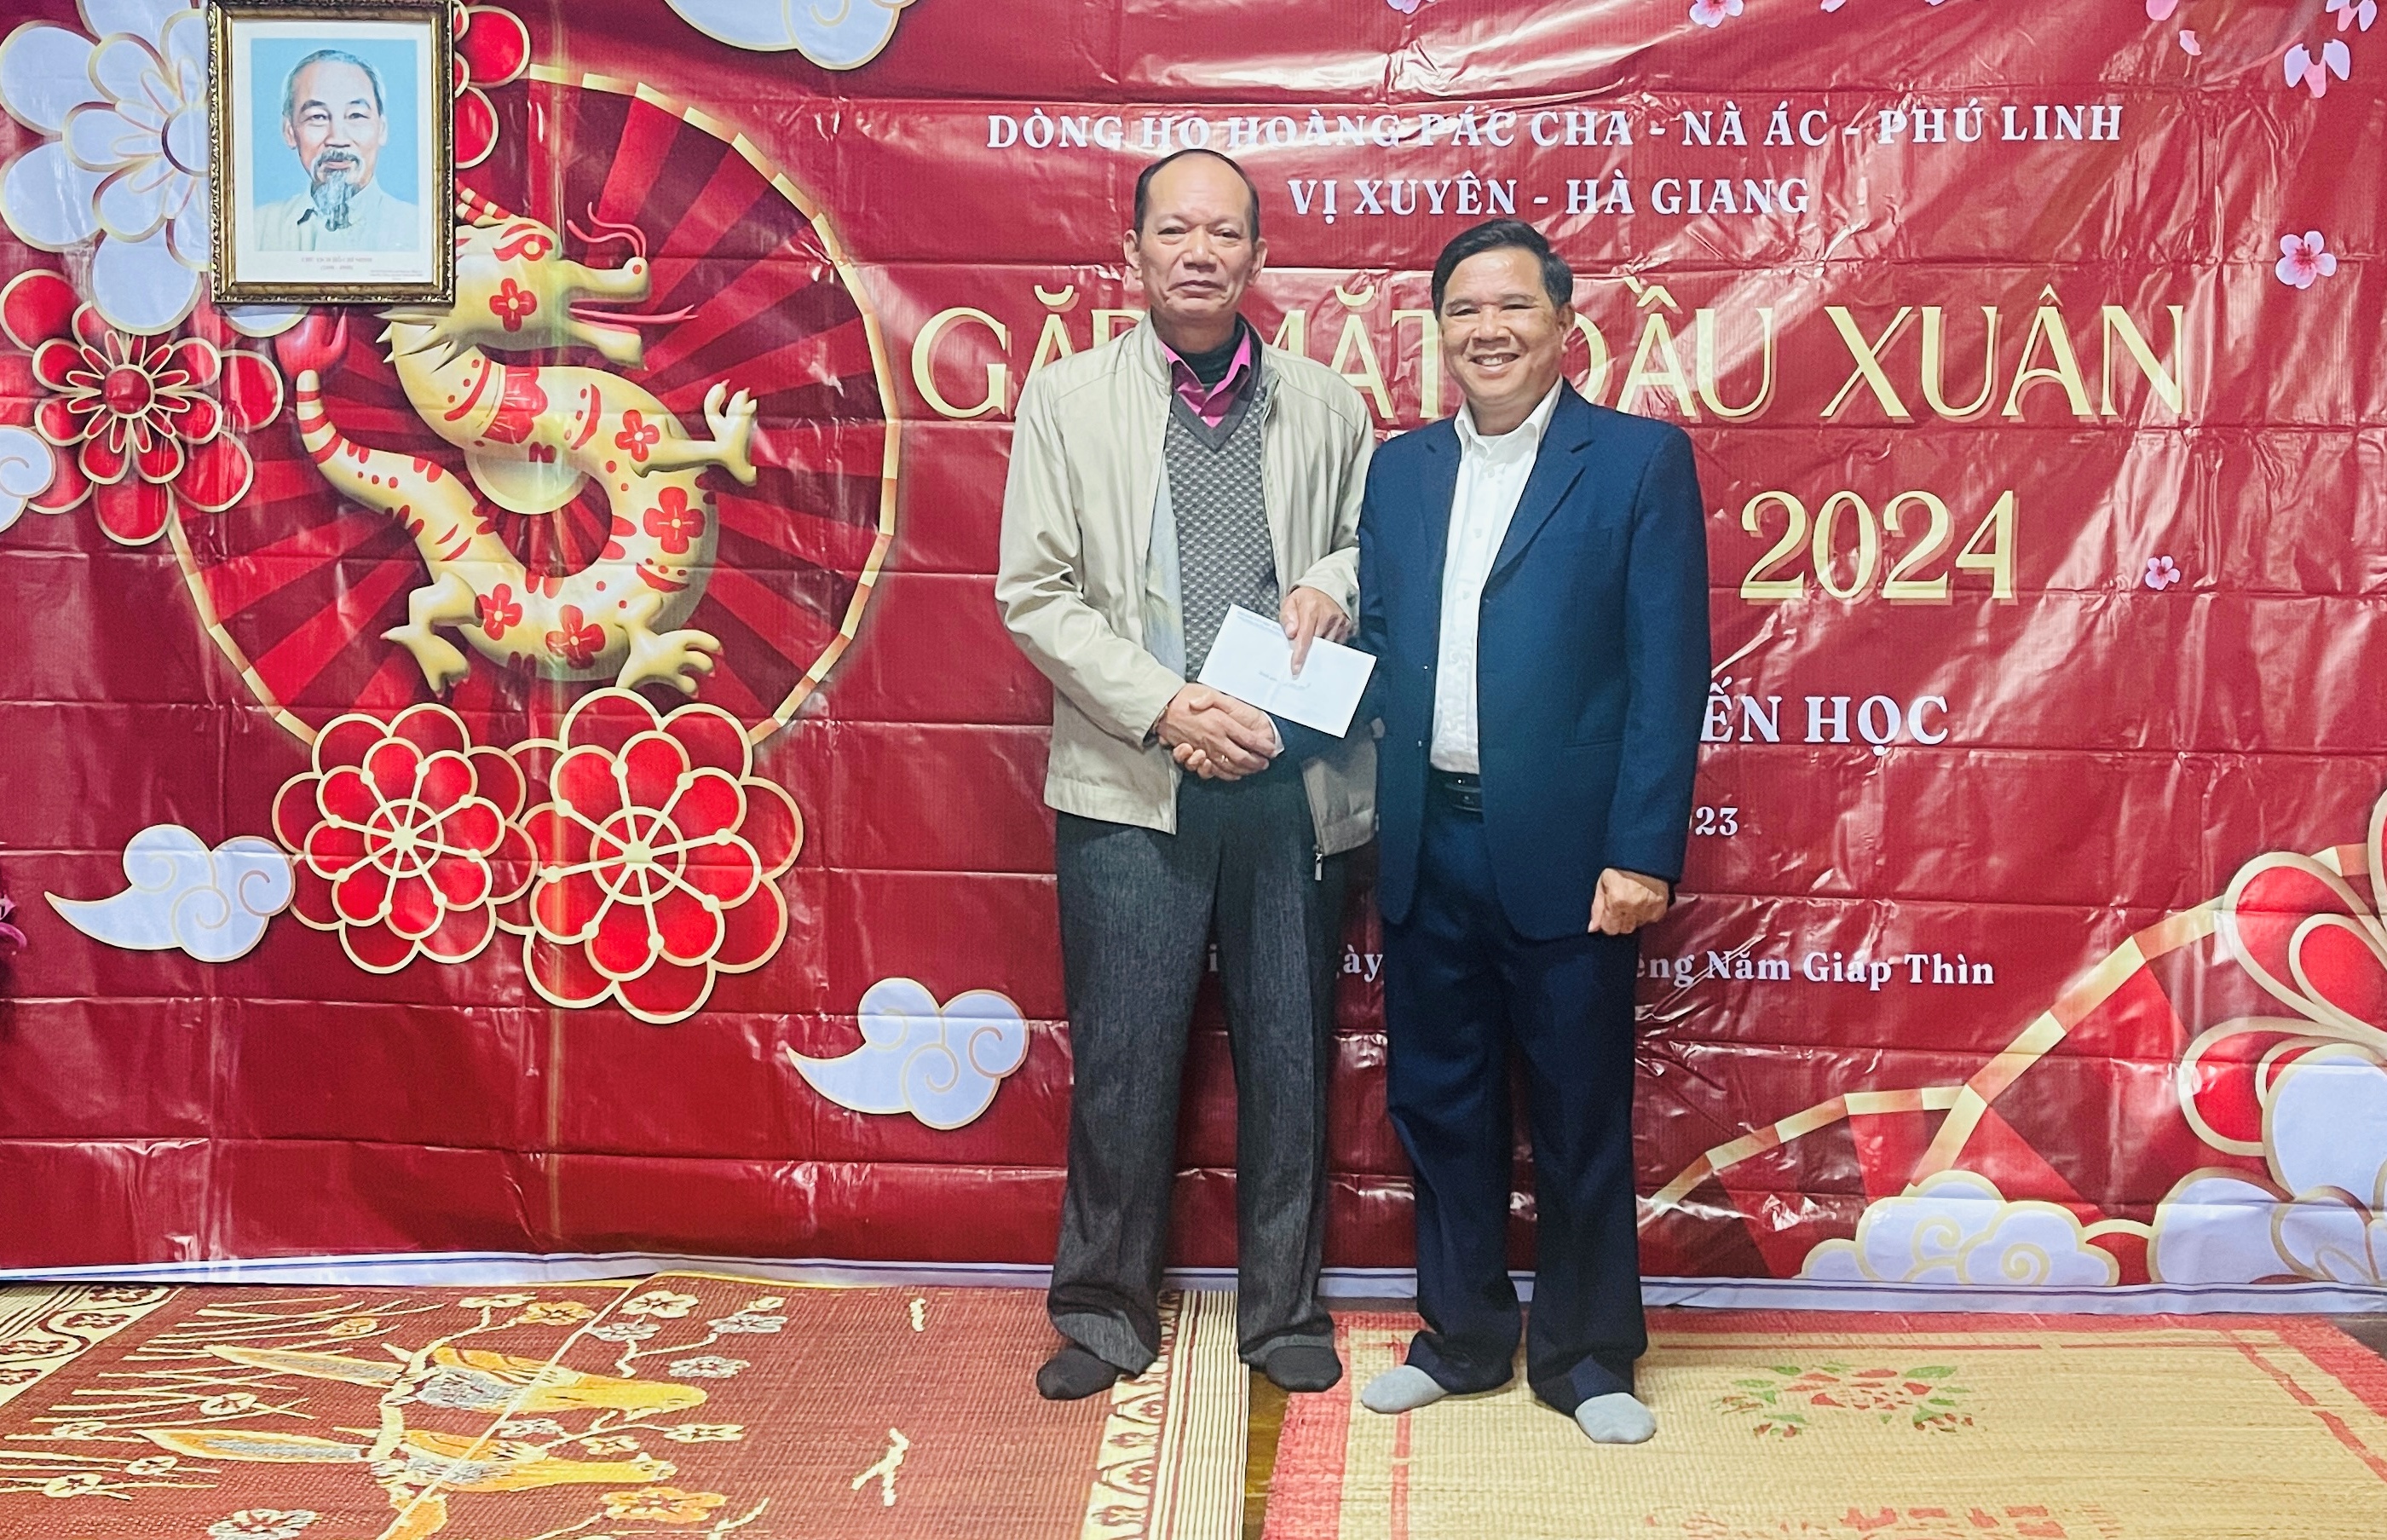 Tổng kết công tác khuyến học dòng học Hoàng Pác Cha, thôn Nà Ác xã Phú Linh